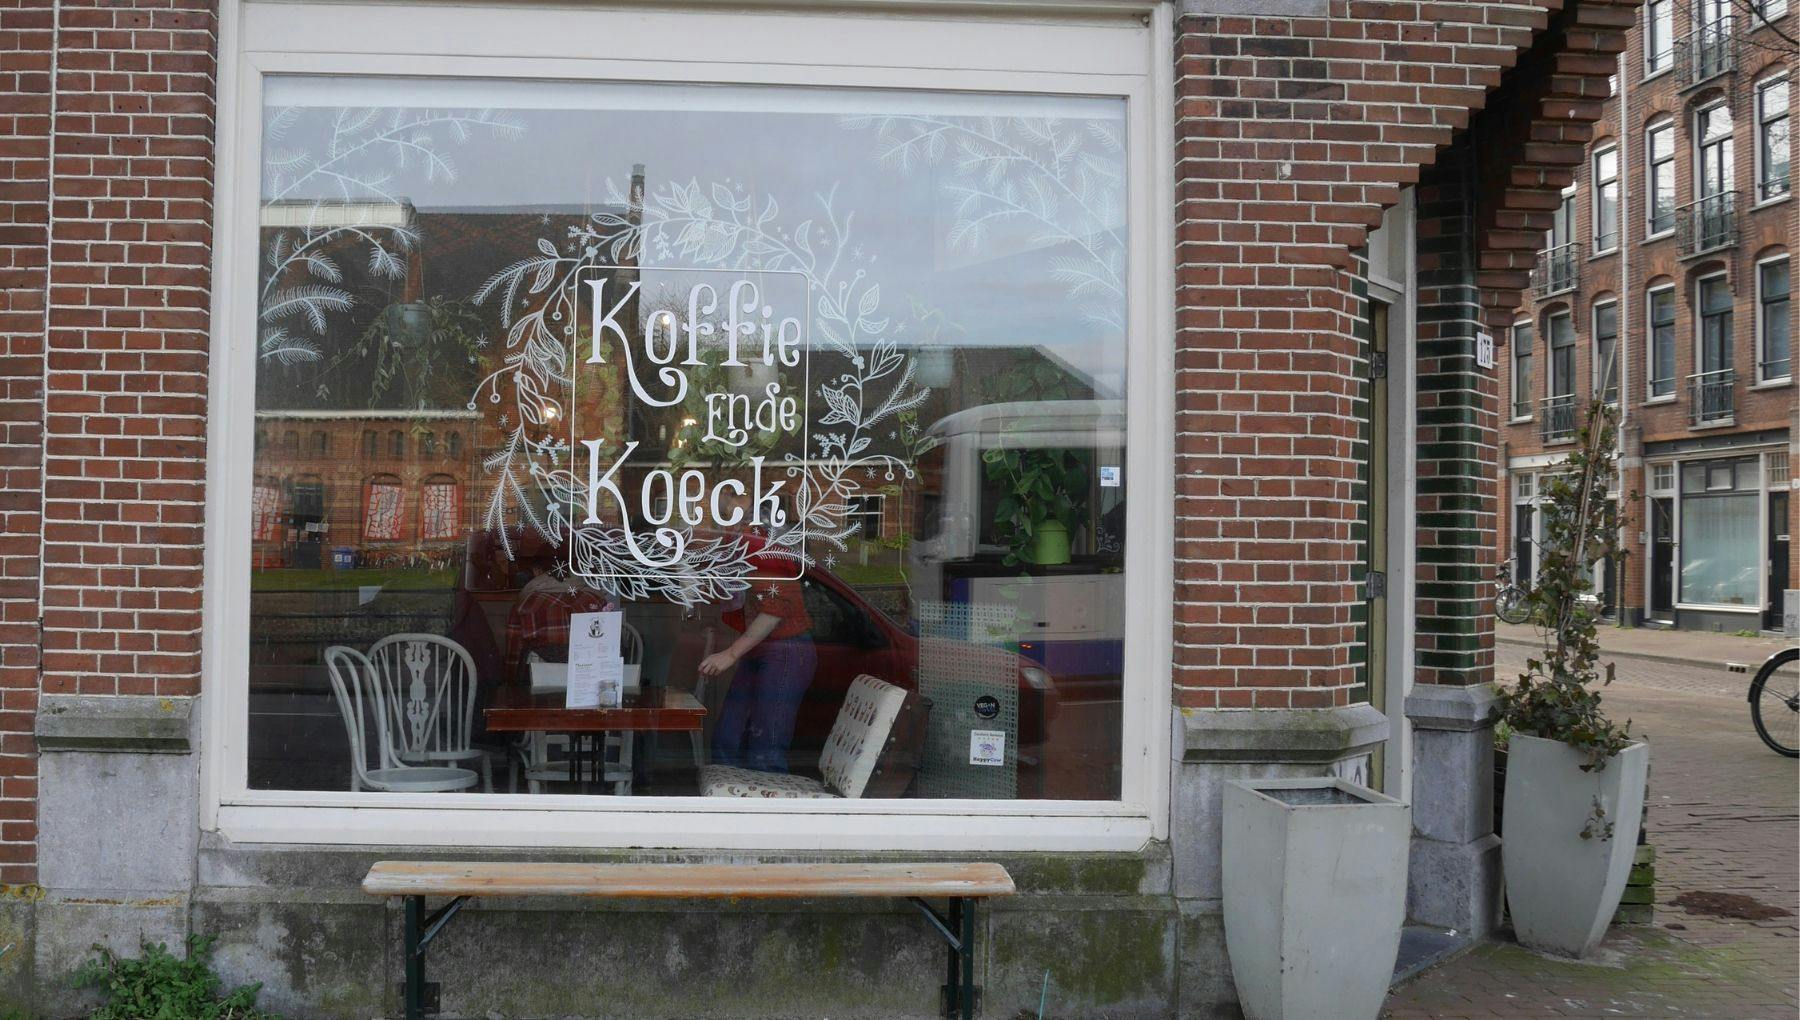 Koffie ende Koeck café exterior